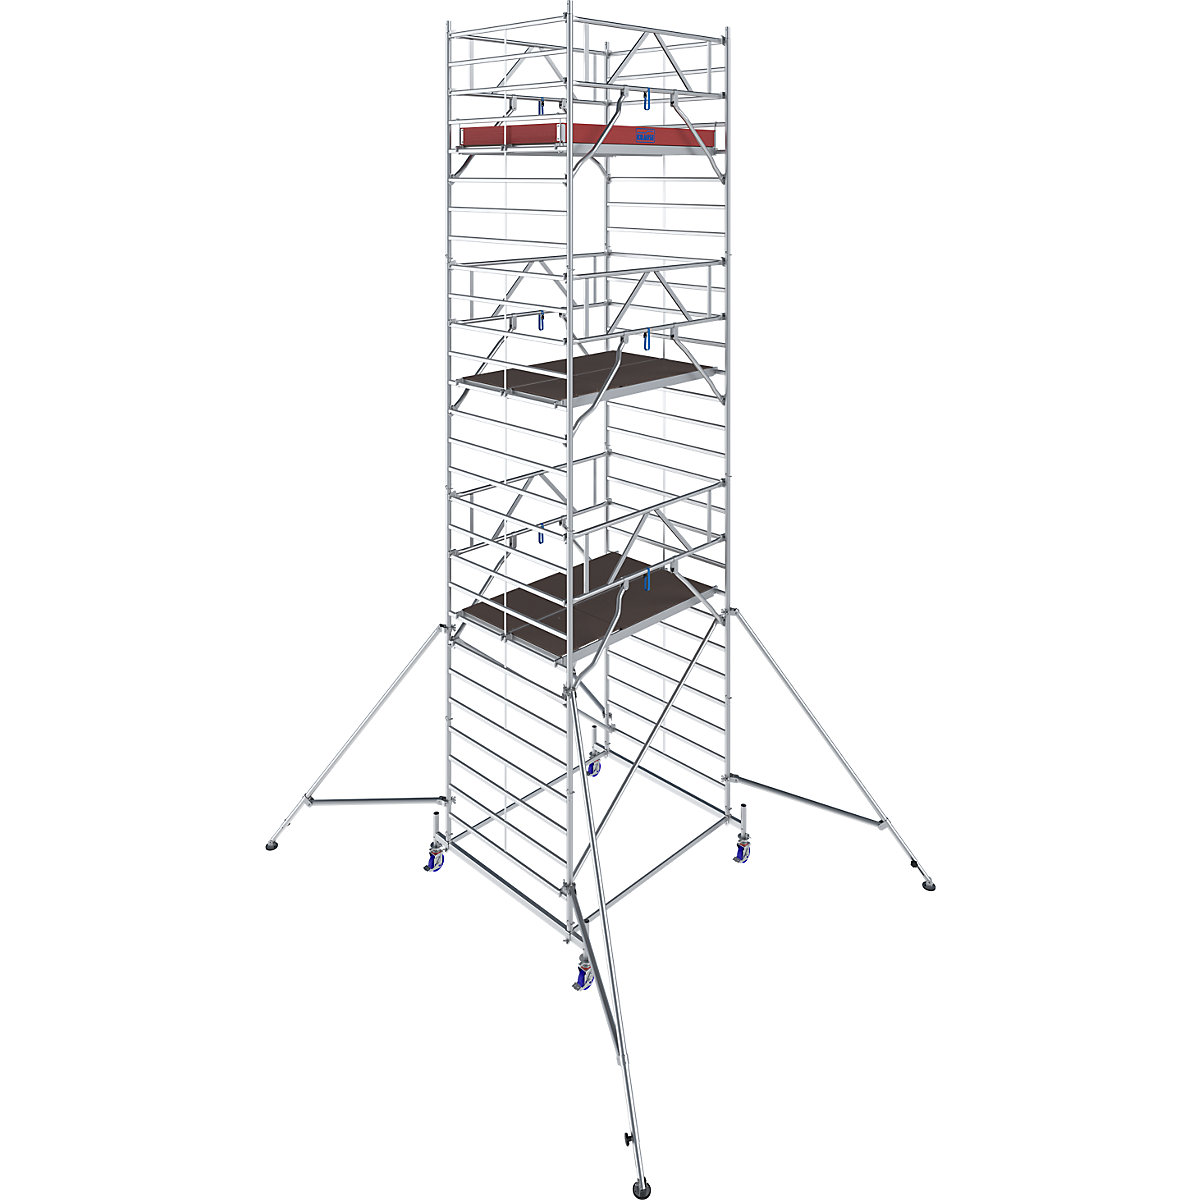 Échafaudage roulant STABILO série 50 – KRAUSE, longueur plate-forme 2,50 m, hauteur de travail 8,40 m-11